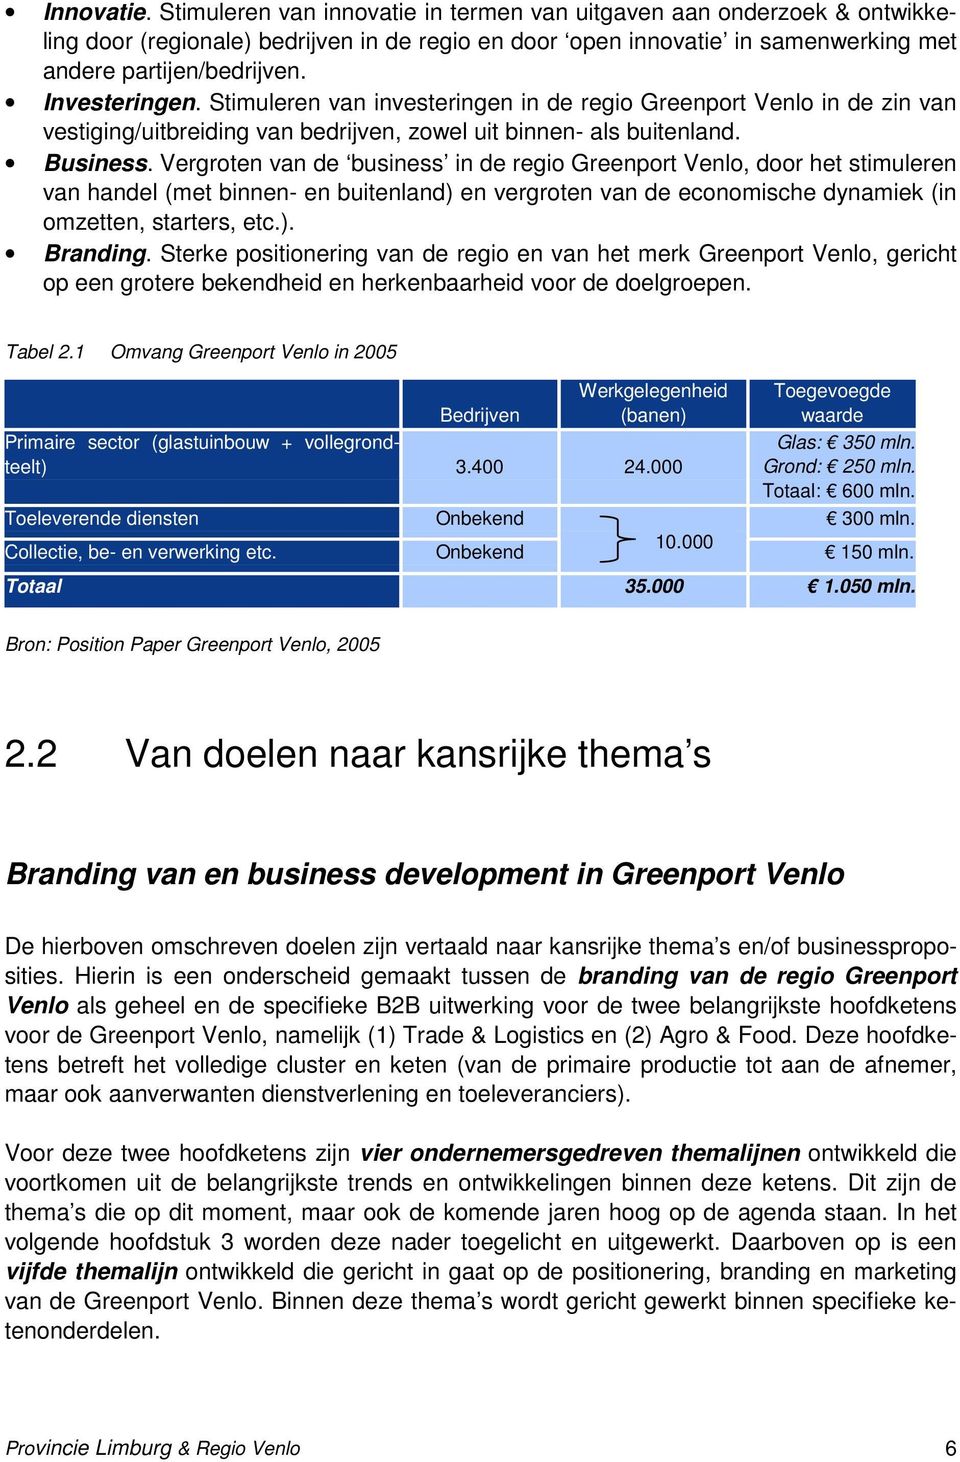 Vergroten van de business in de regio Greenport Venlo, door het stimuleren van handel (met binnen- en buitenland) en vergroten van de economische dynamiek (in omzetten, starters, etc.). Branding.